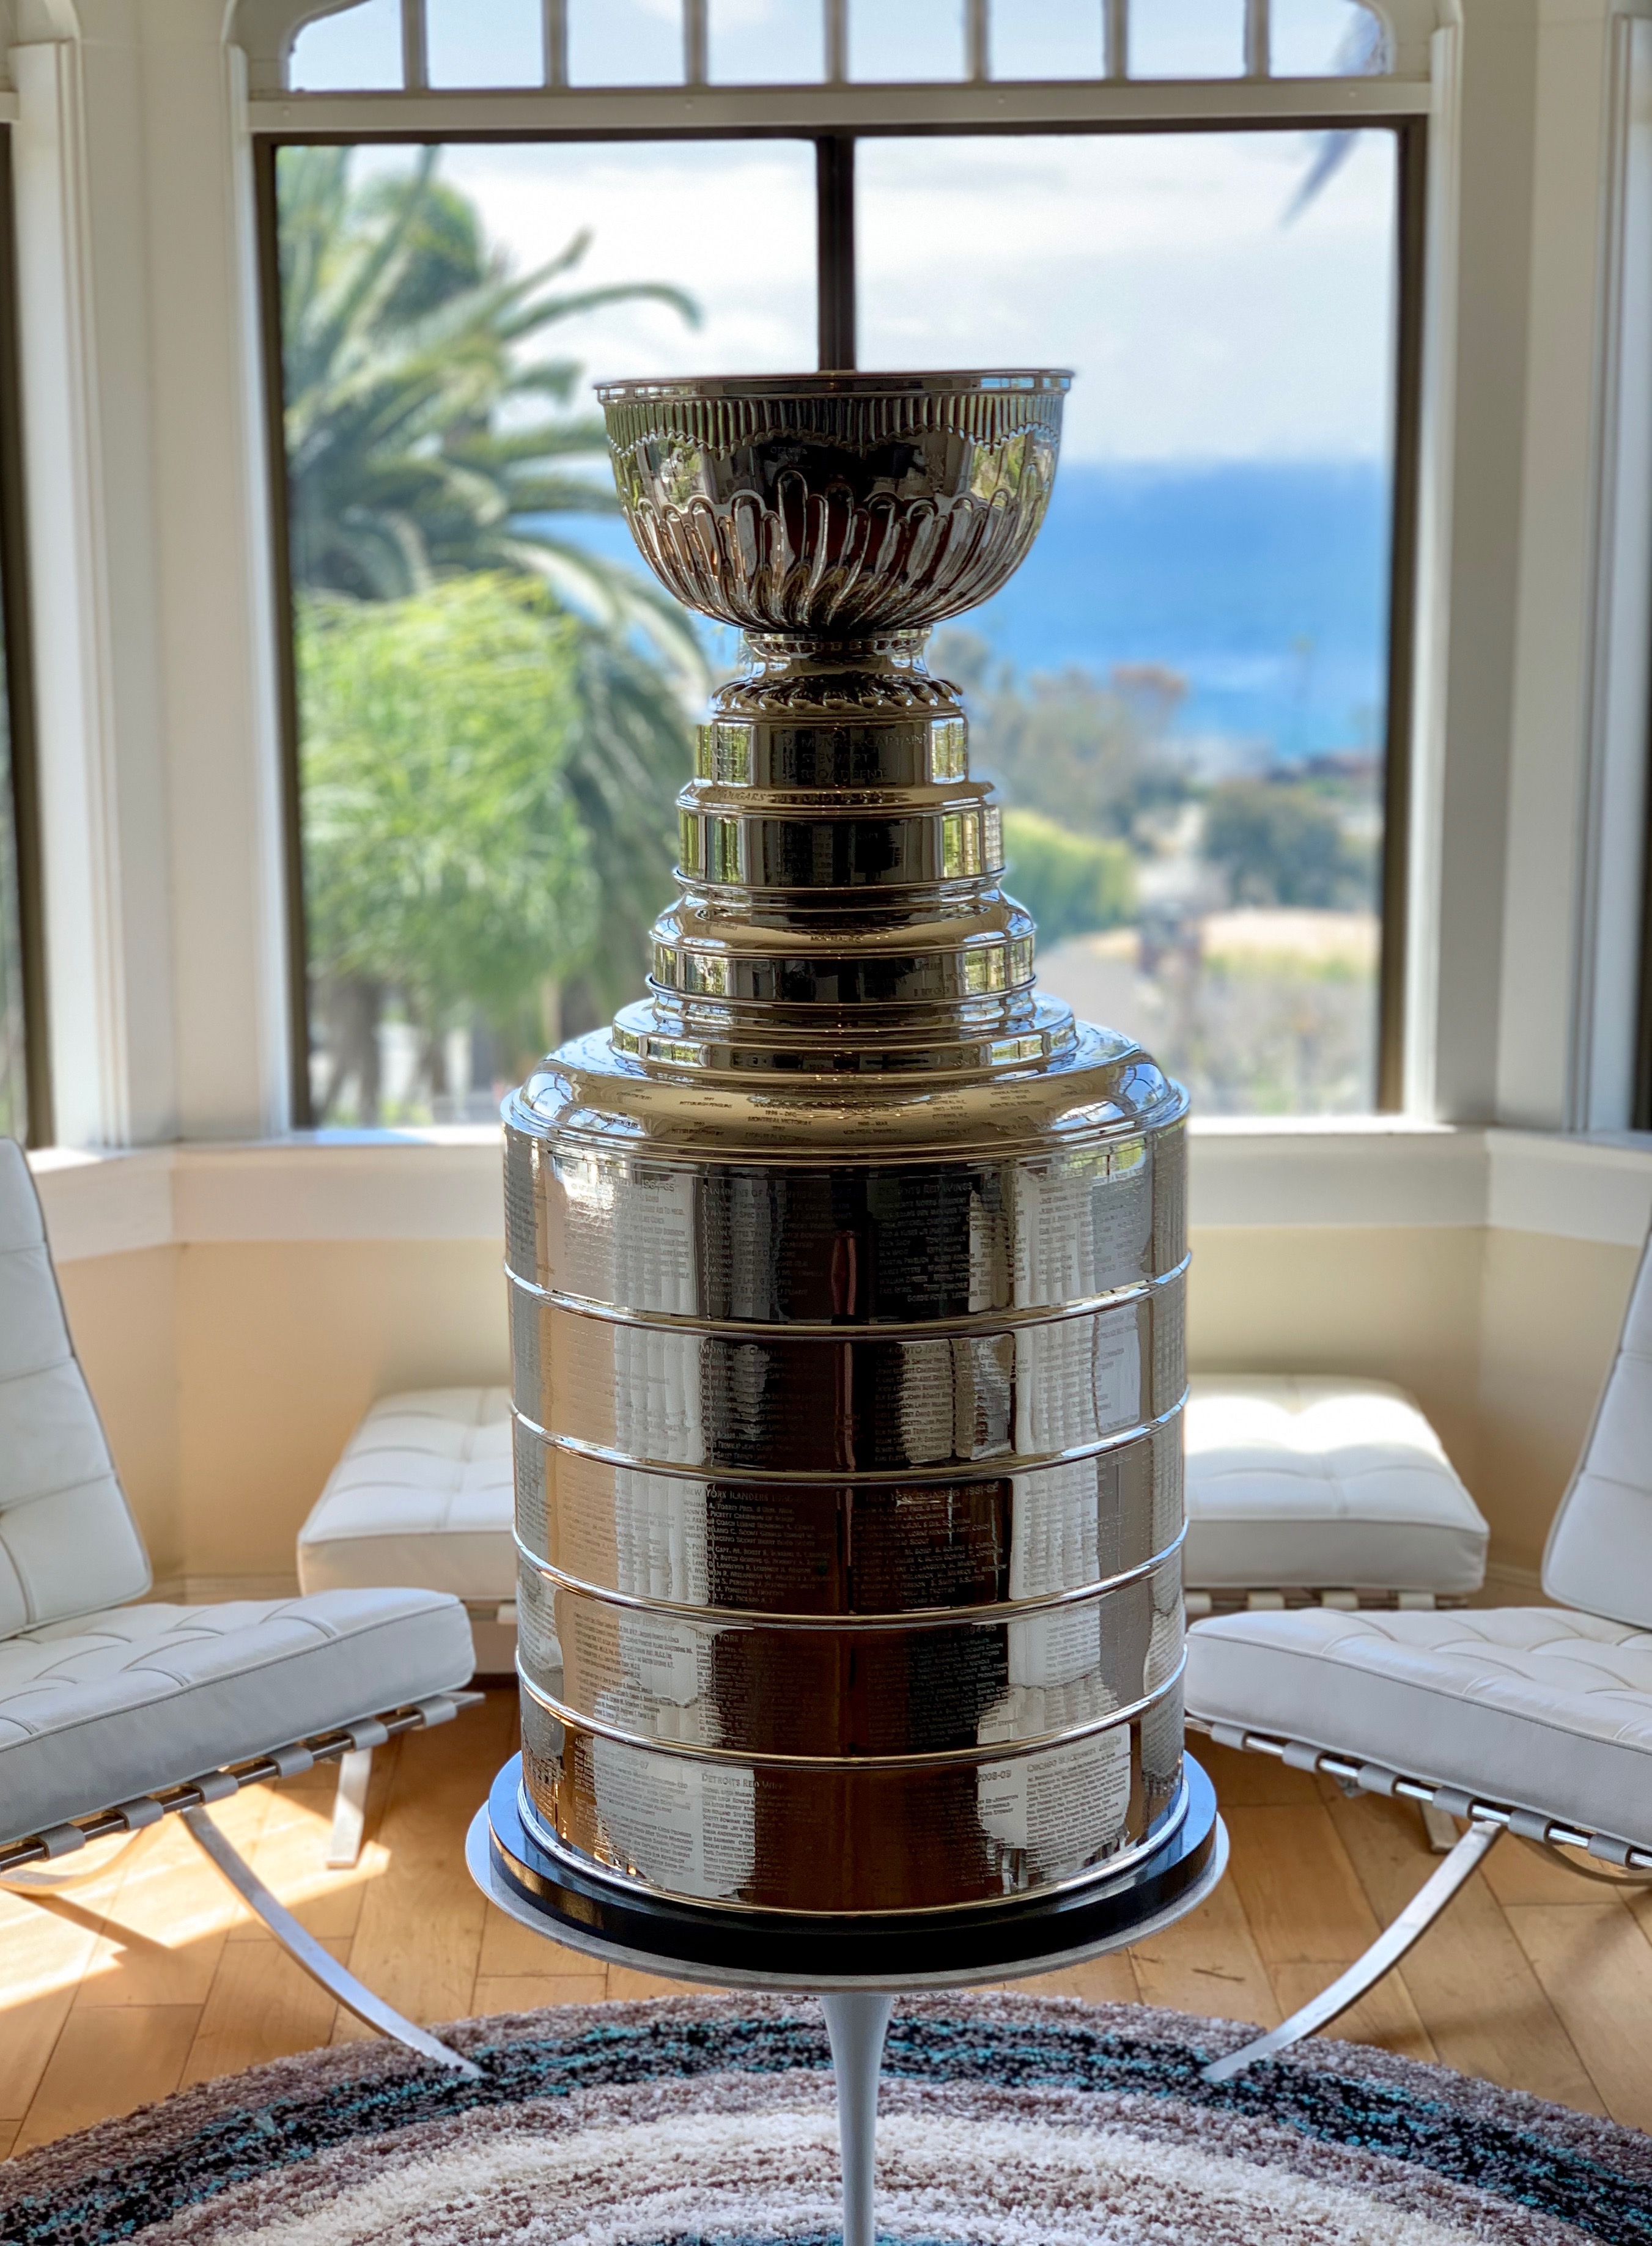 Stanley Cup – TrophyClone